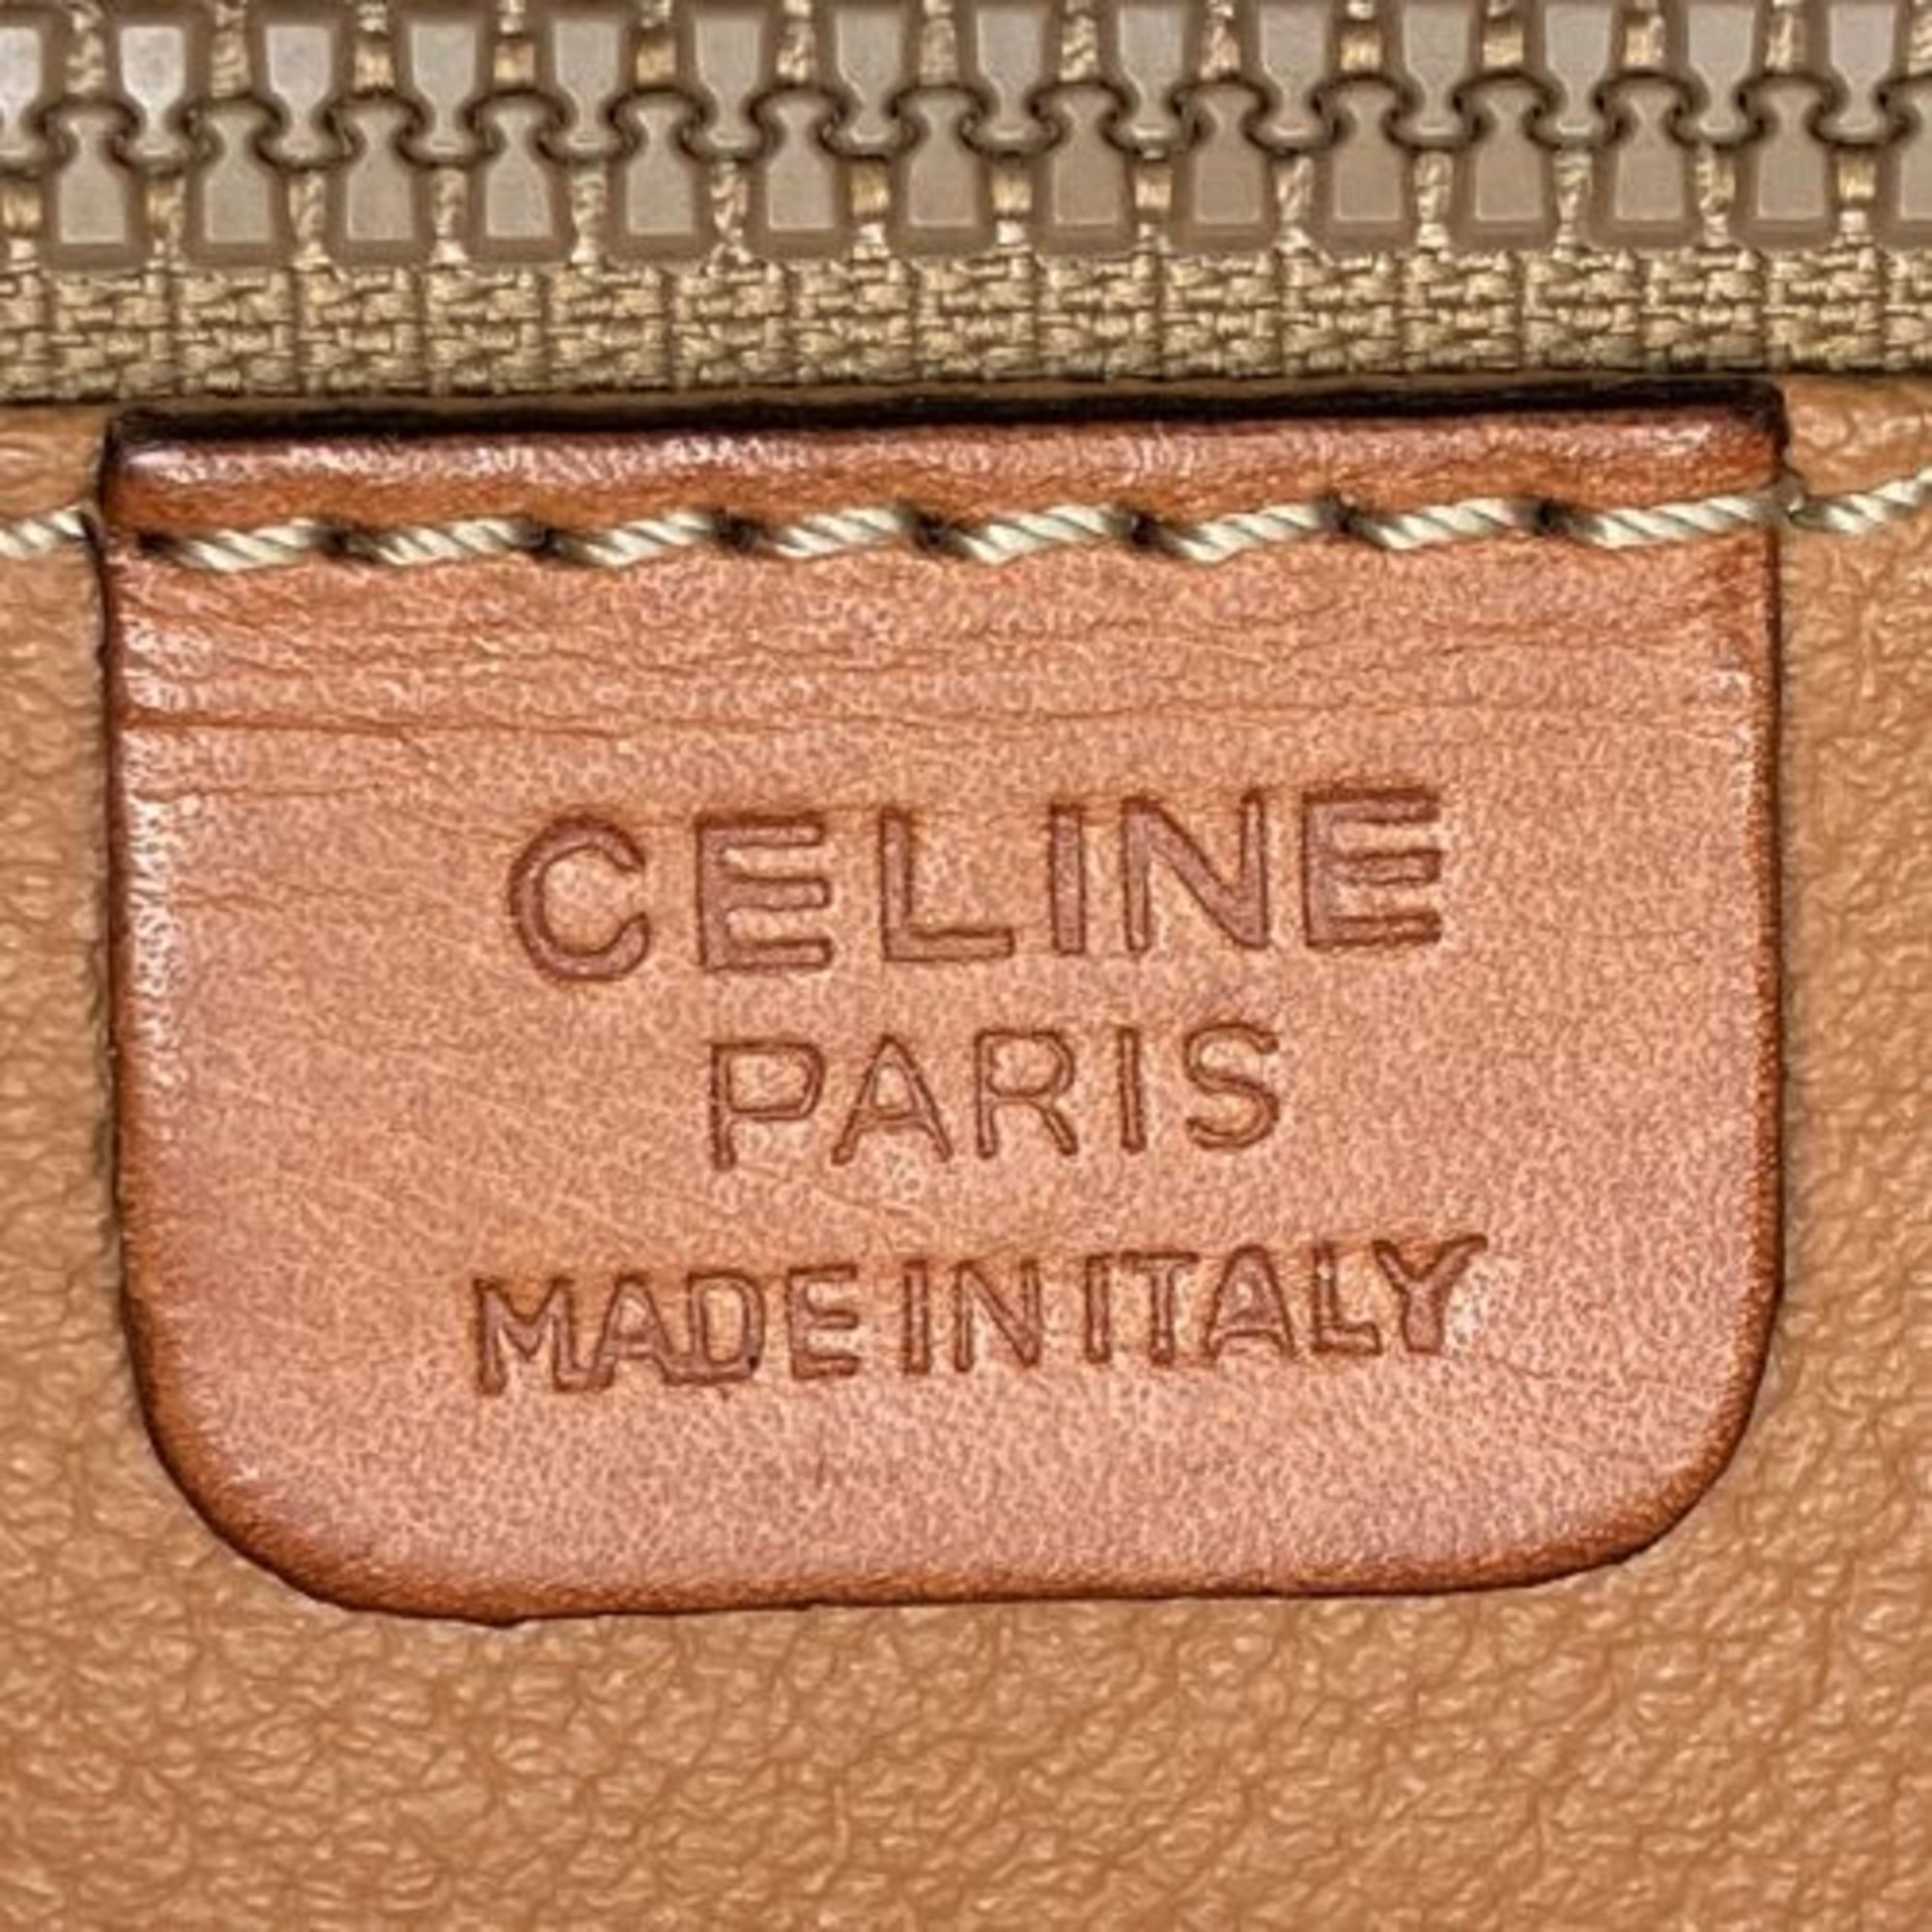 CELINE Macadam clutch bag second business brown PVC leather ladies men's fashion M94